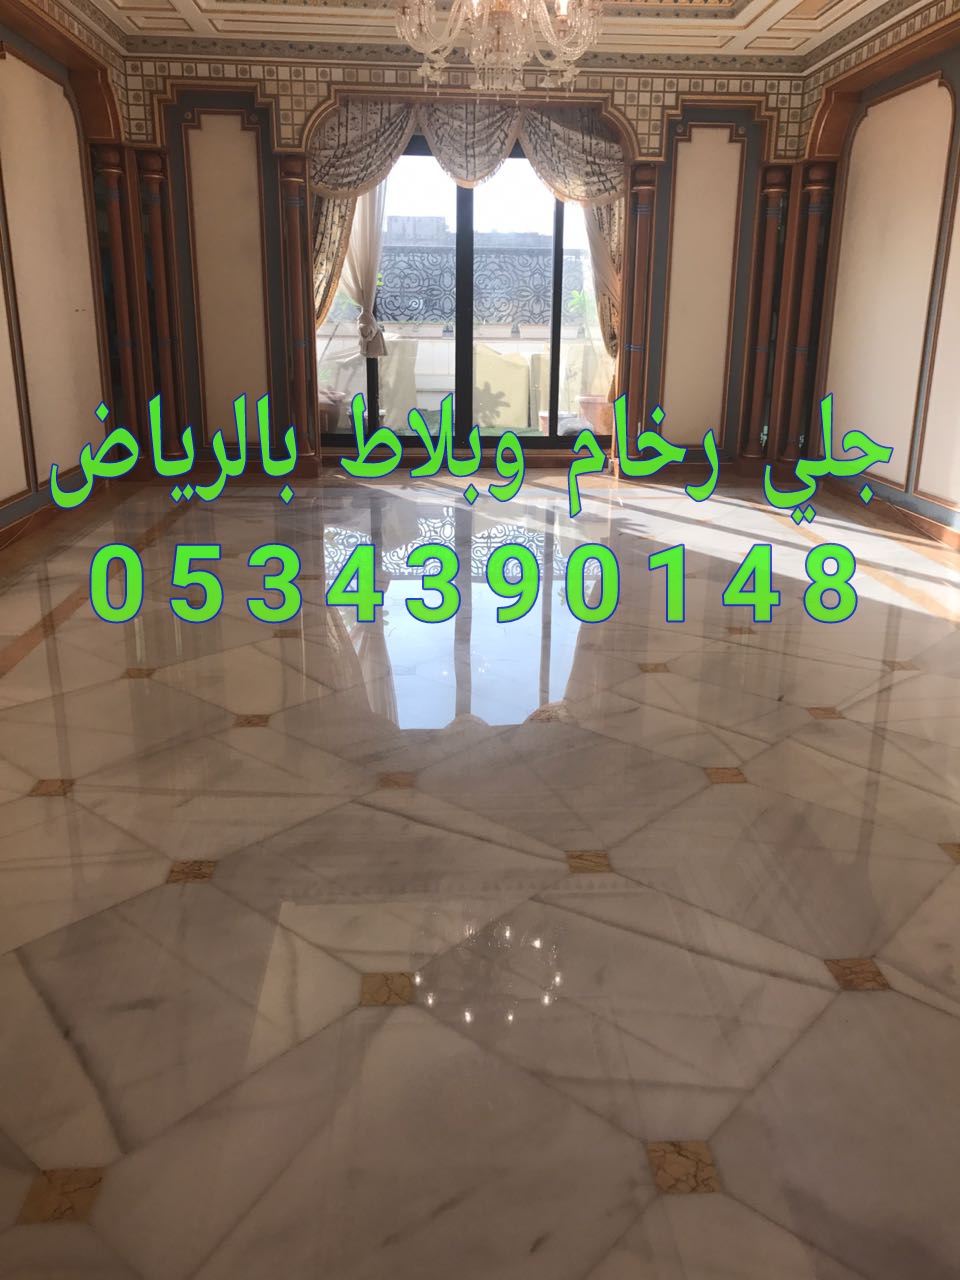 جلي الرخام بالرياض من شركة الجوهرة 0534390148 ،شركة جلى وتلميع رخام في الرياض P_11486wjlw0